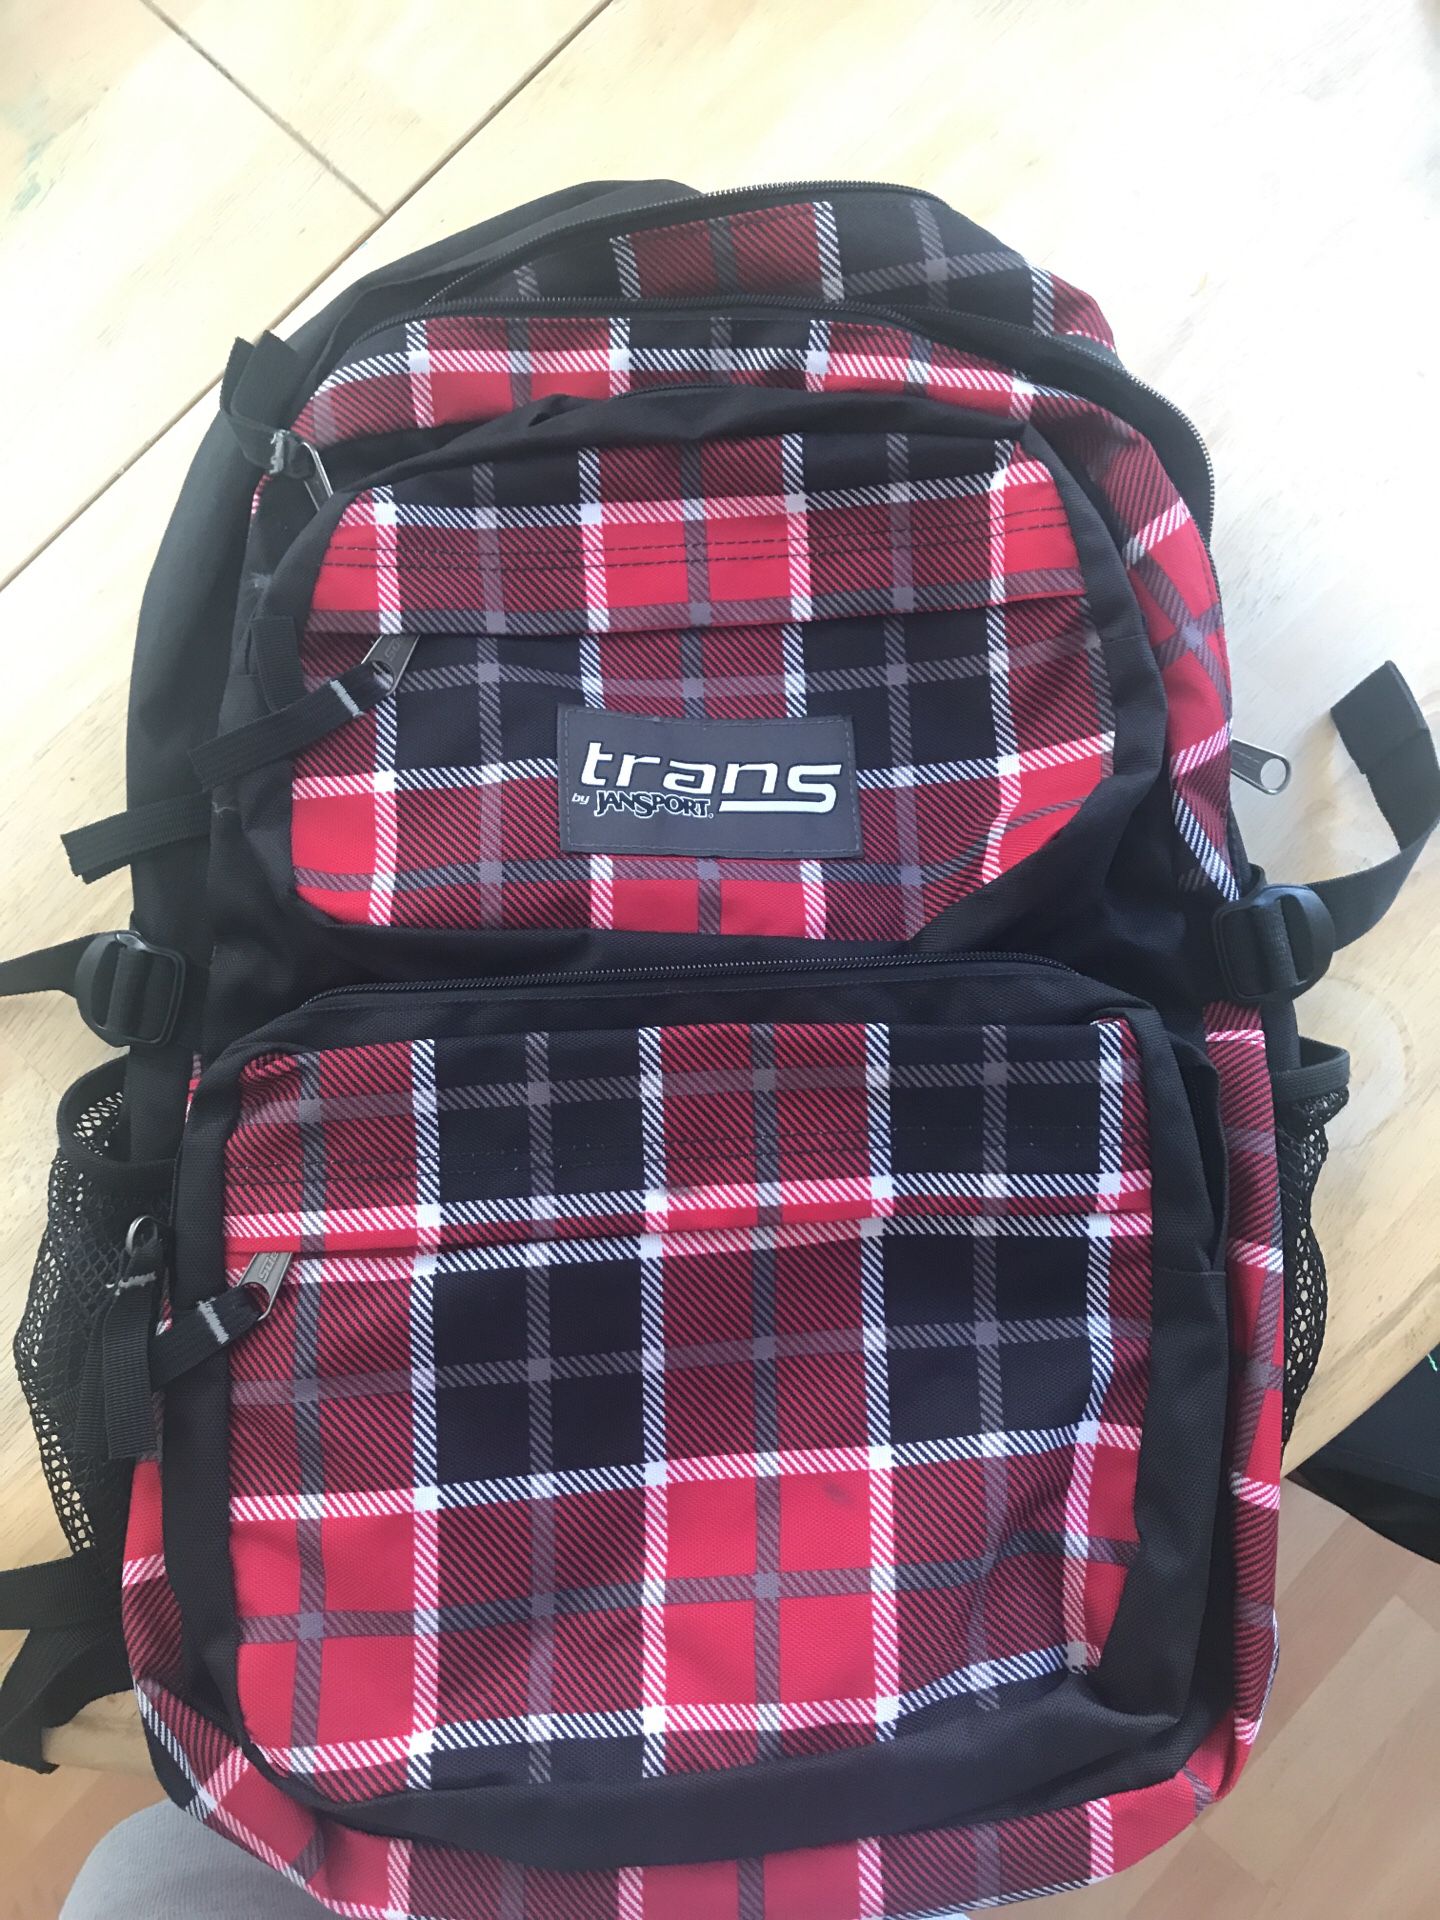 Jansport plaid backpack